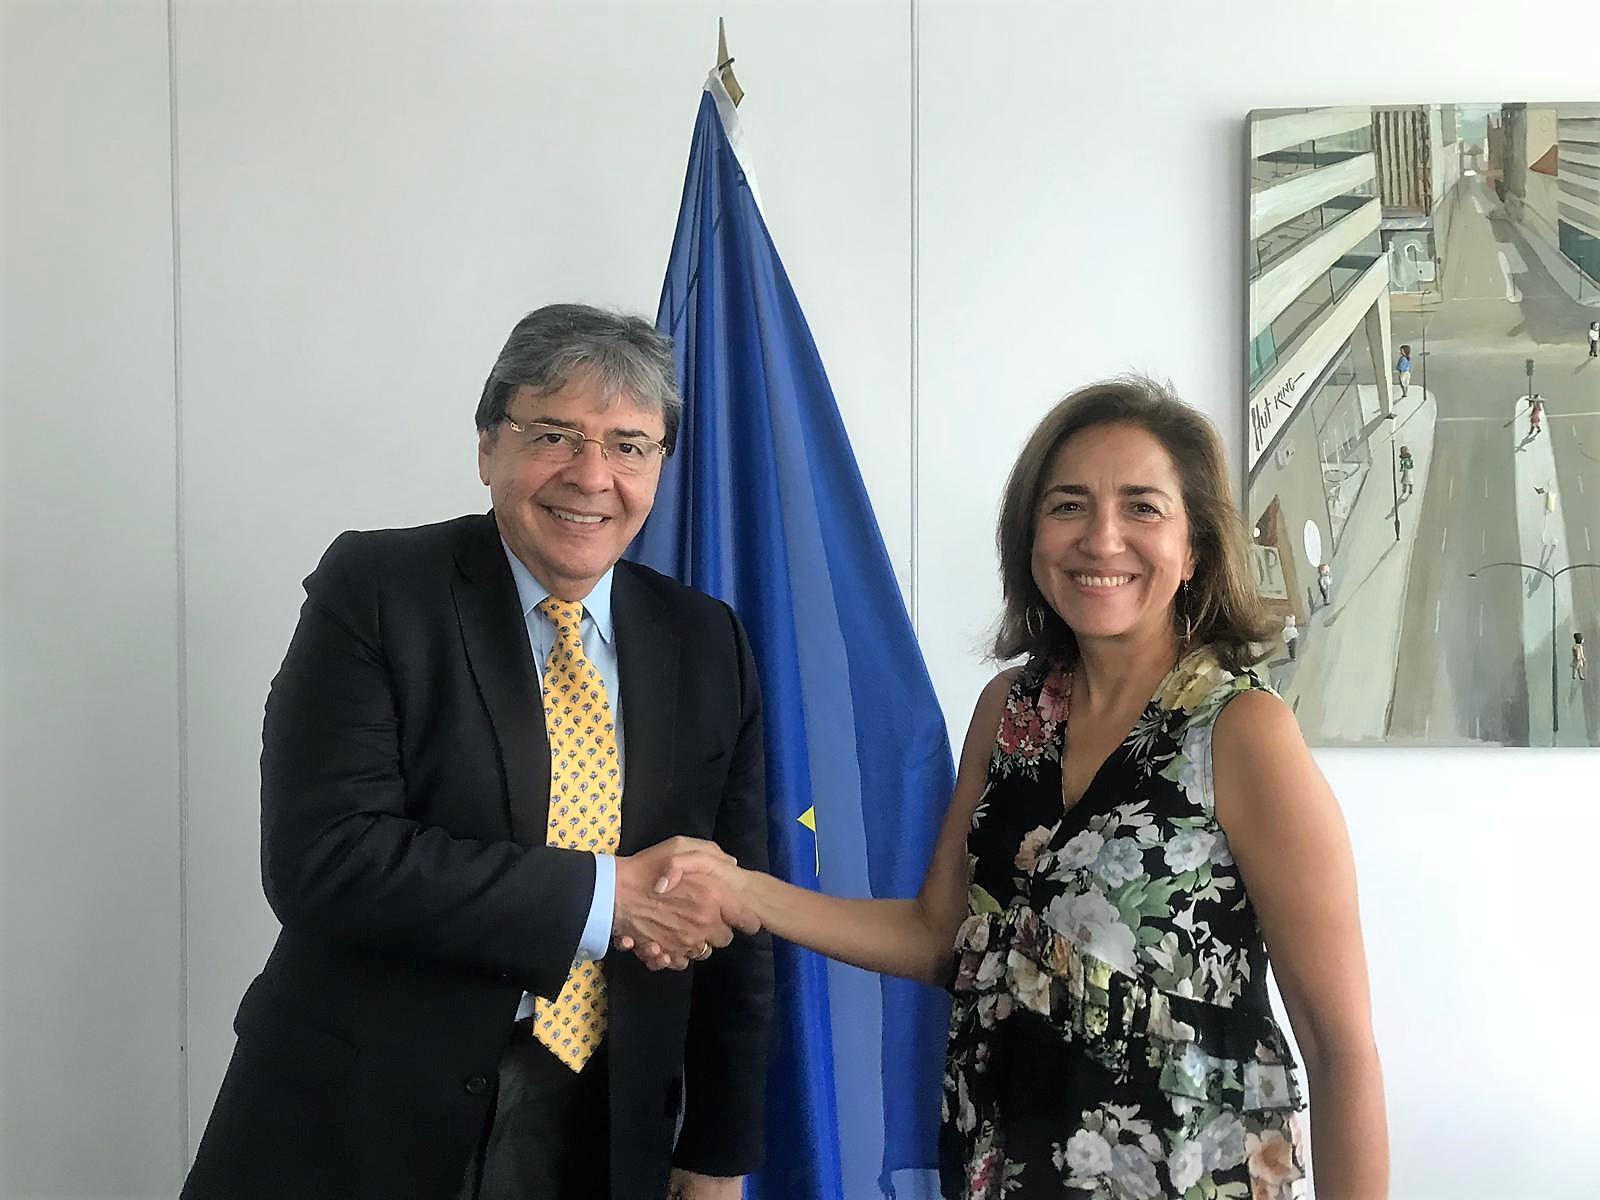 El Ministro Trujillo se reunió con la Directora General de Educación, Cultura y Deporte de la Comisión Europea, Themis Christophidou